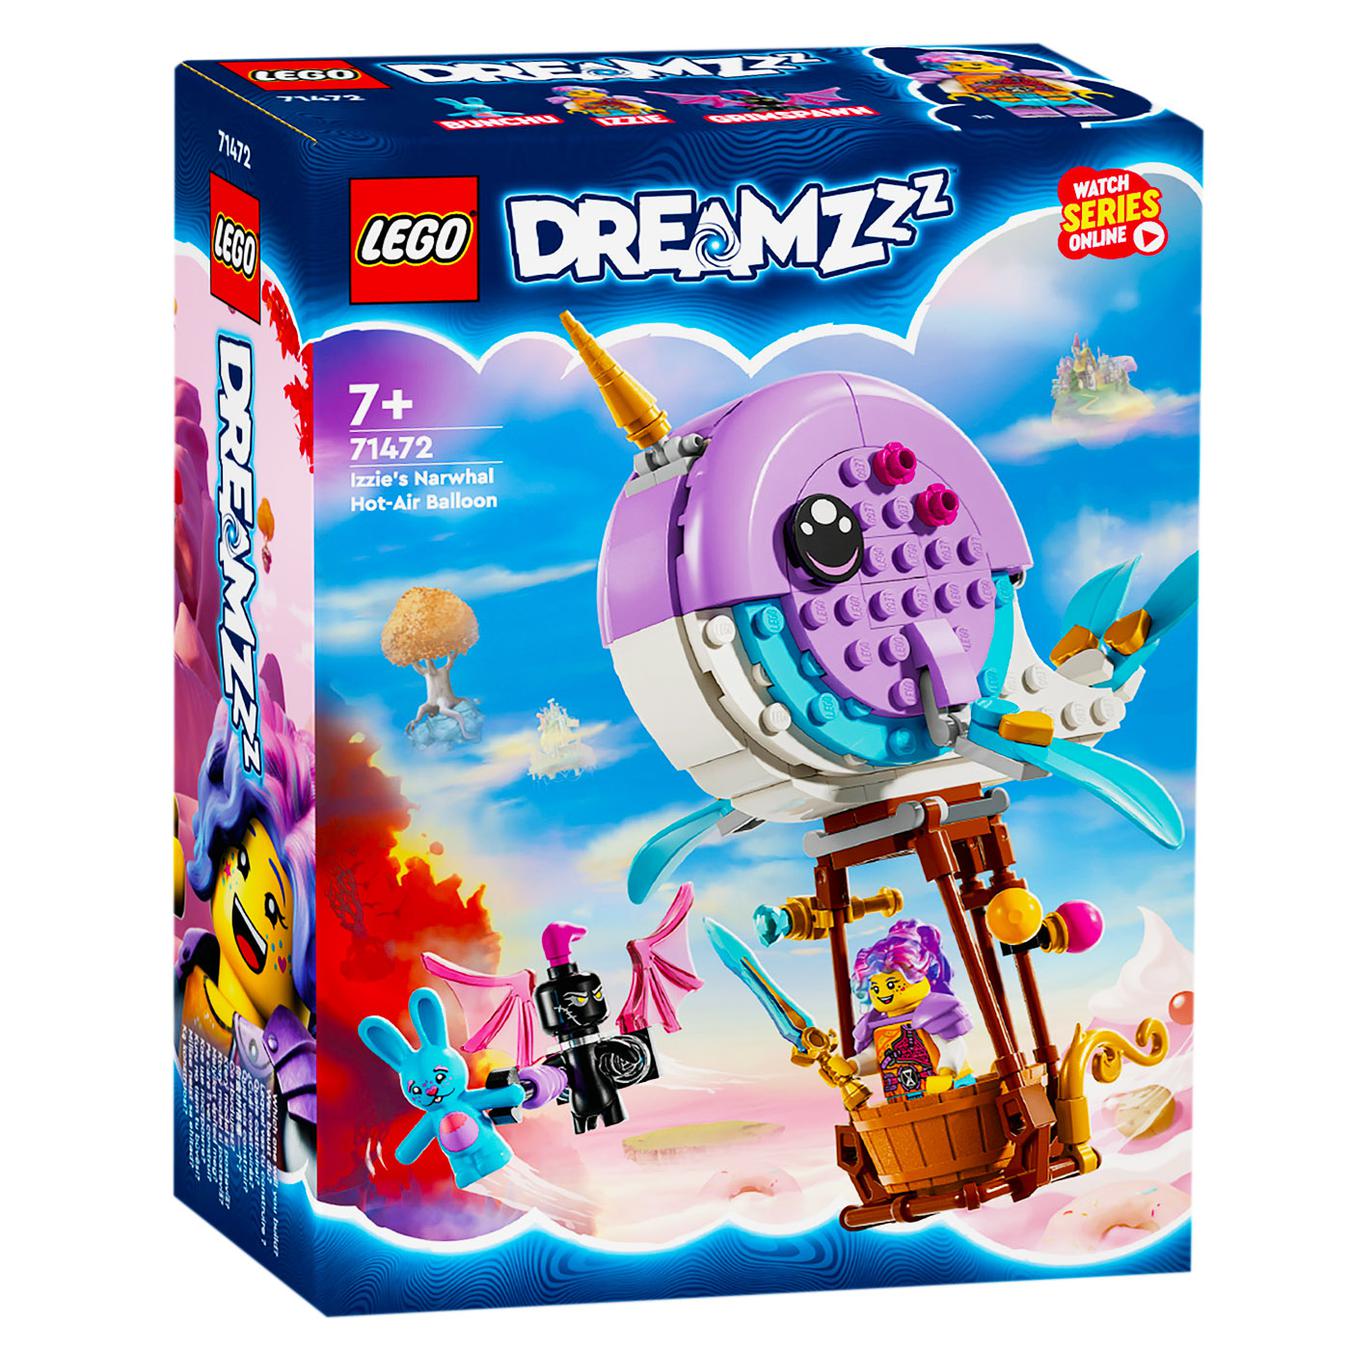 Конструктор LEGO Дримззз 71472 Воздушный шар Иззи Нарвал»